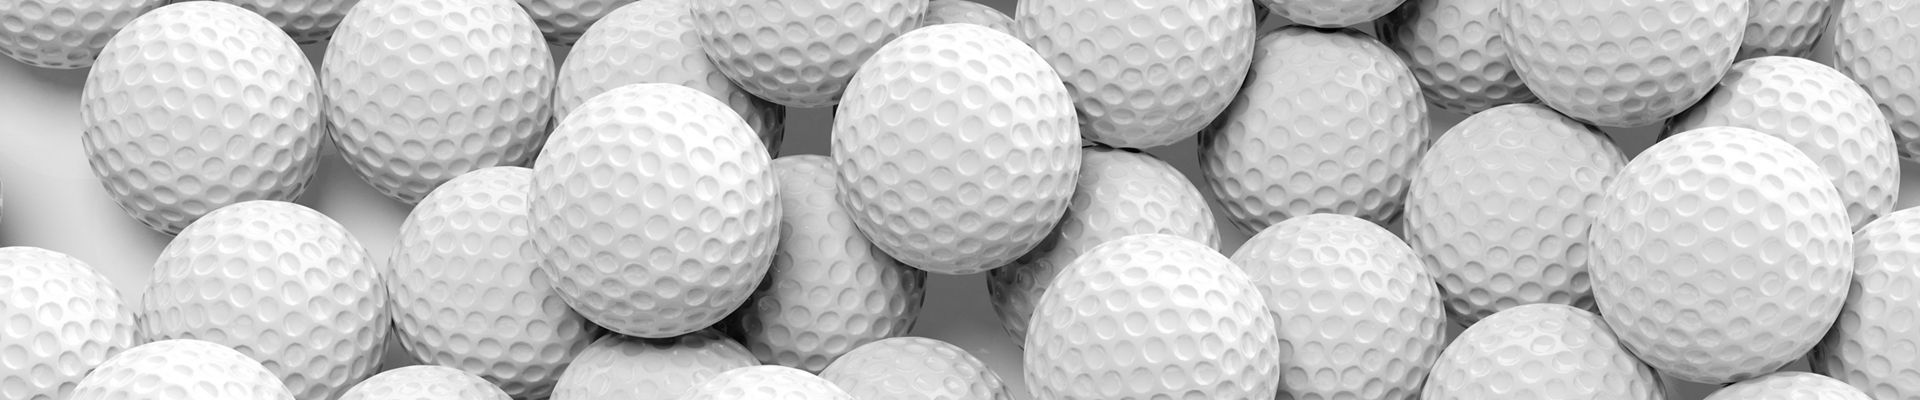 Assorted golf balls